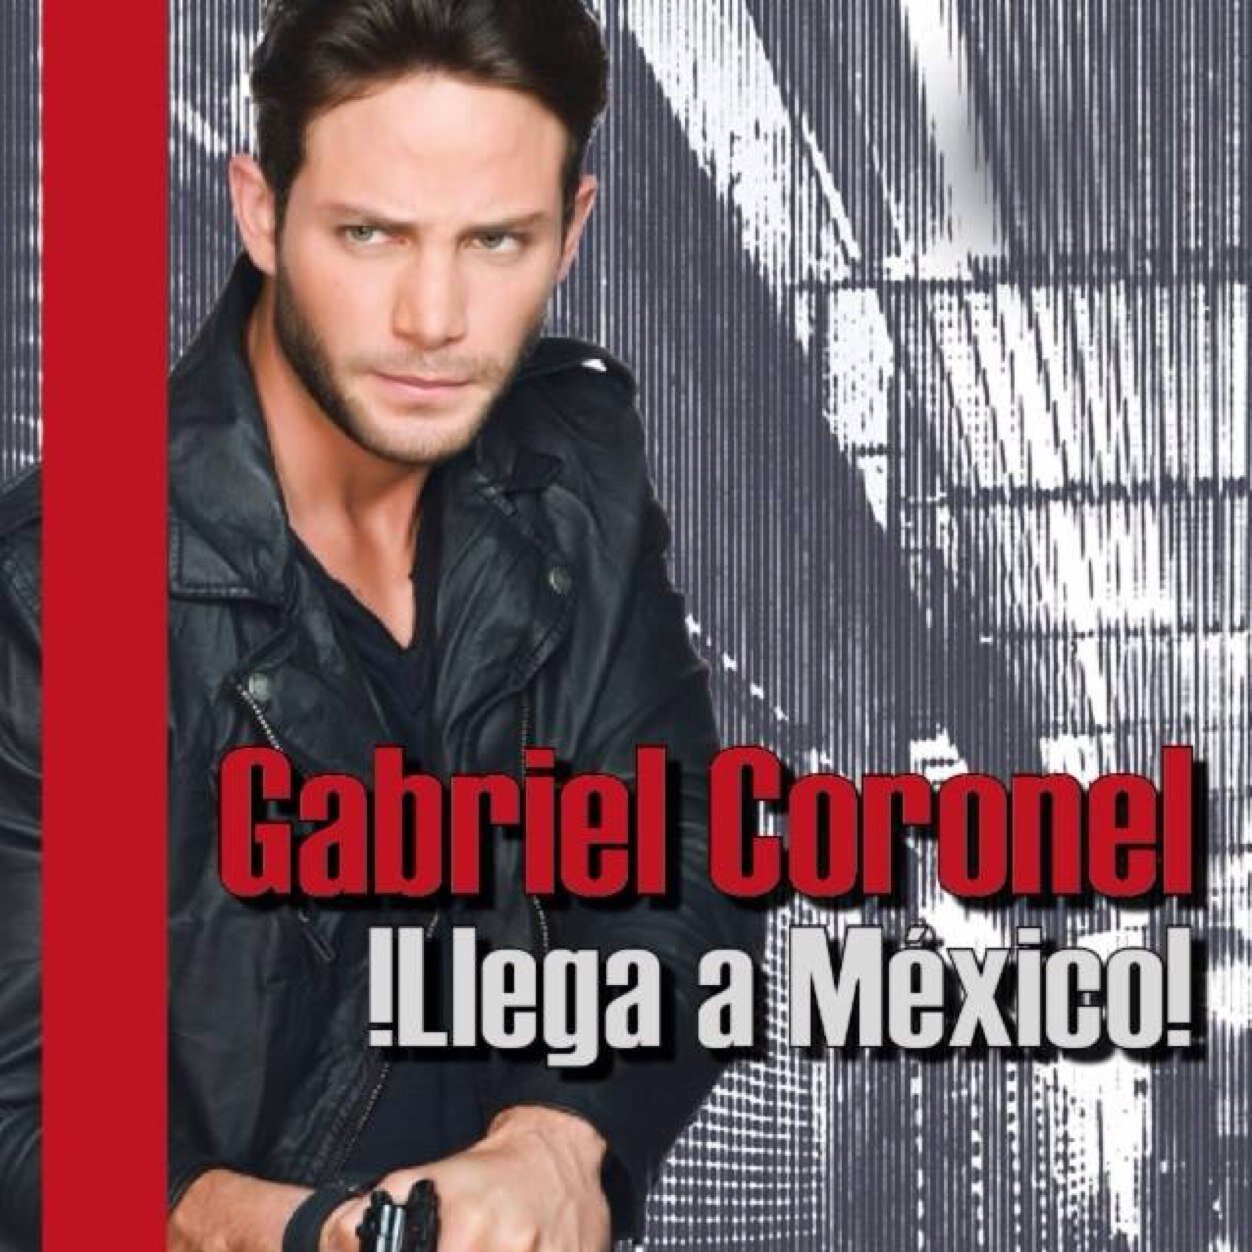 Gabriel Coronel México Fan club. Admiracion, Cariño y respeto para @gabrielcoronel